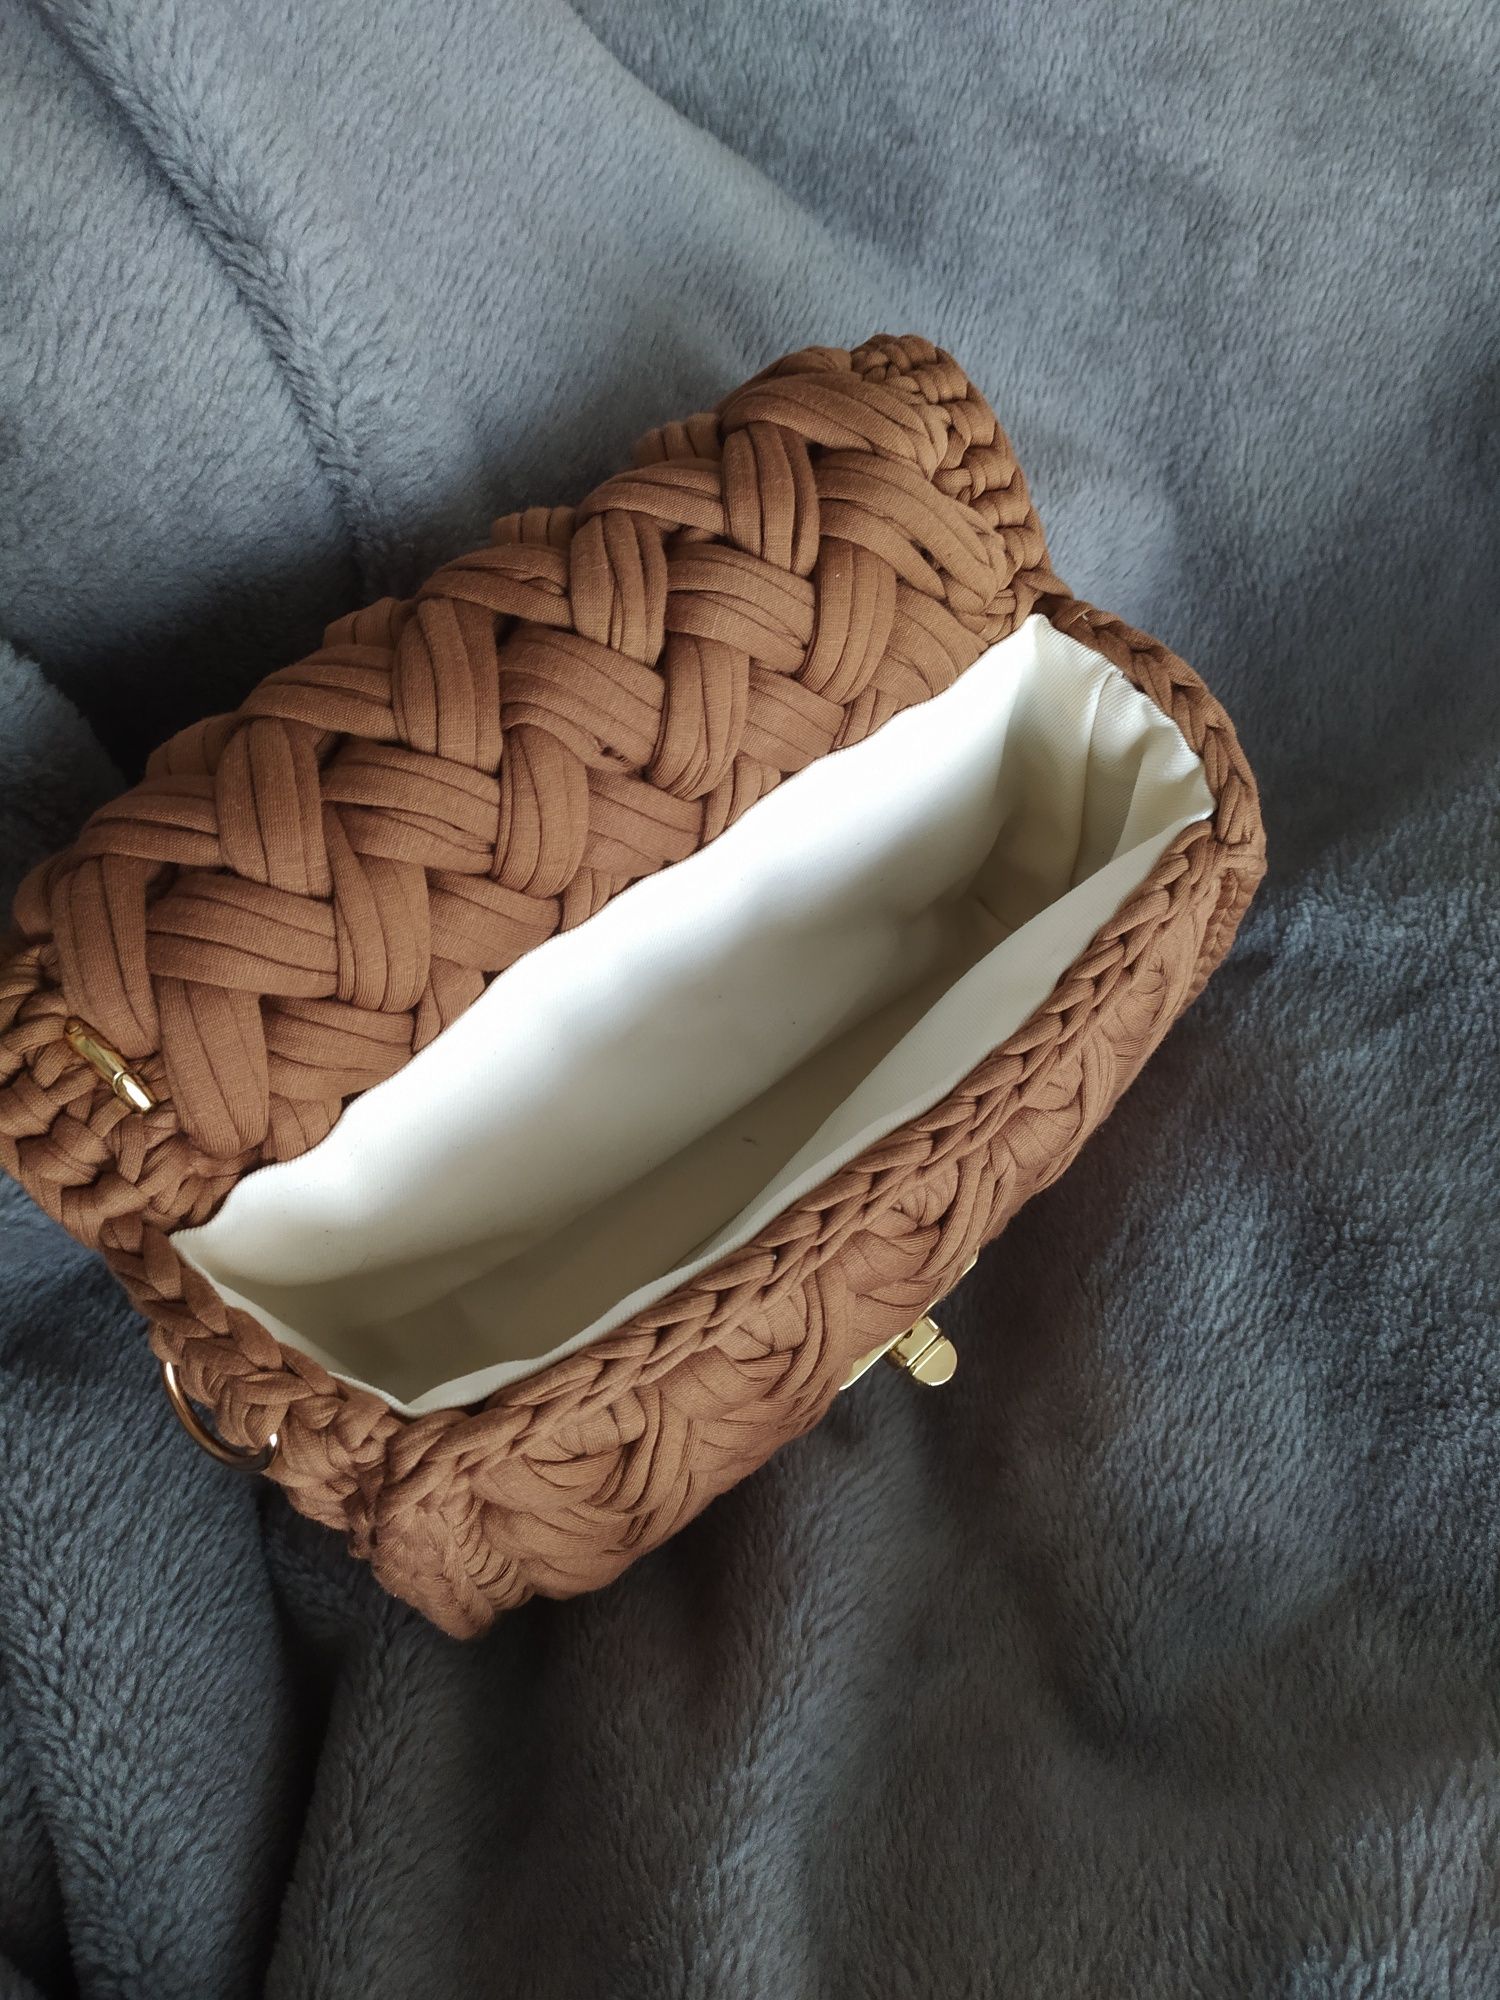 Pleciona brązowa torebka, handmade, wyjątkowy prezent